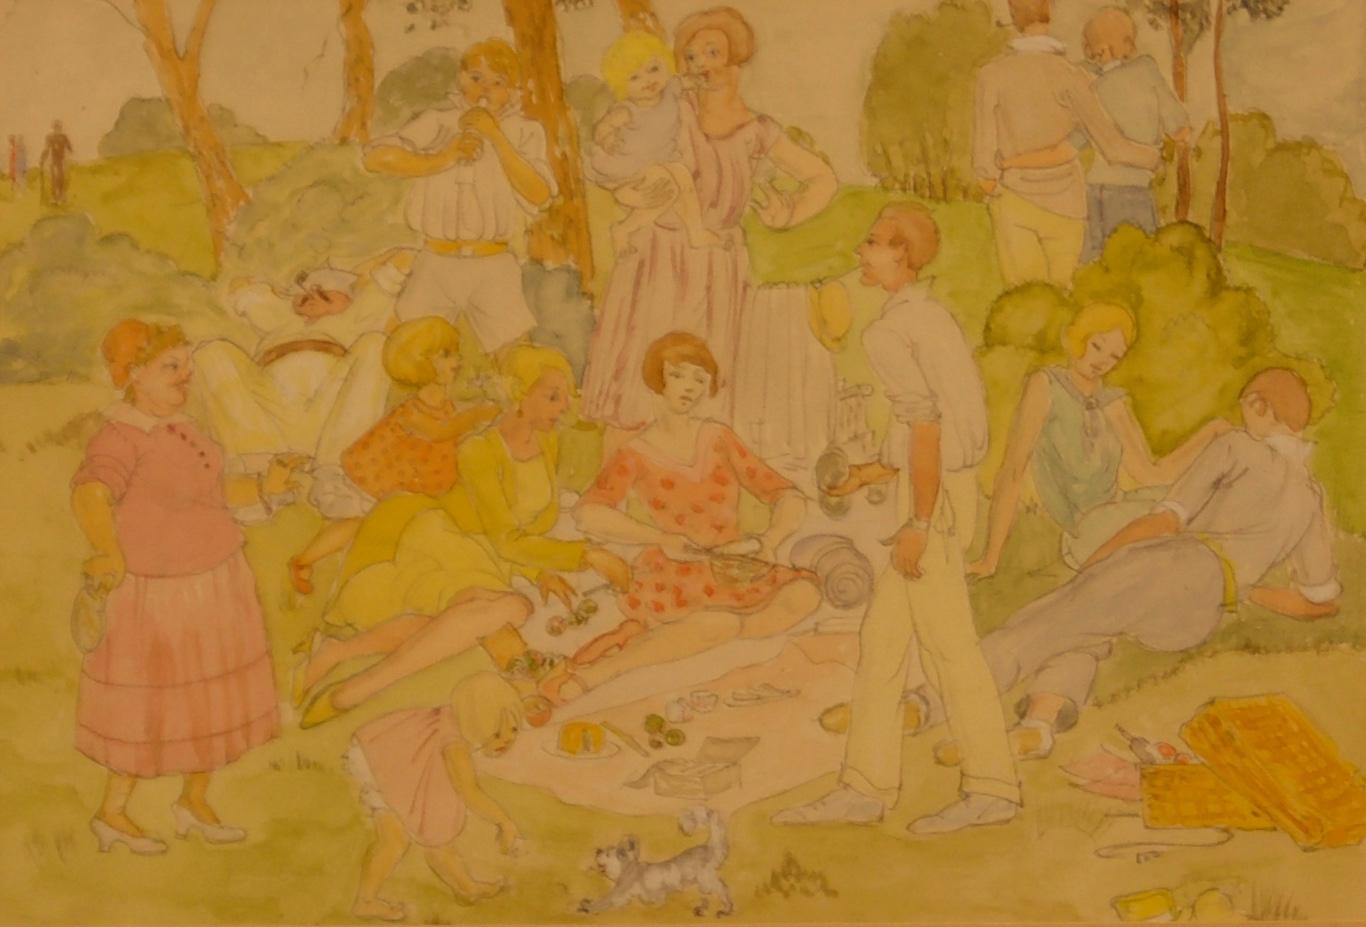 Landscape Art Unknown - Picnic familiale - Aquarelle du 20e siècle représentant une pique-nique lors d'une journée de famille dans un parc